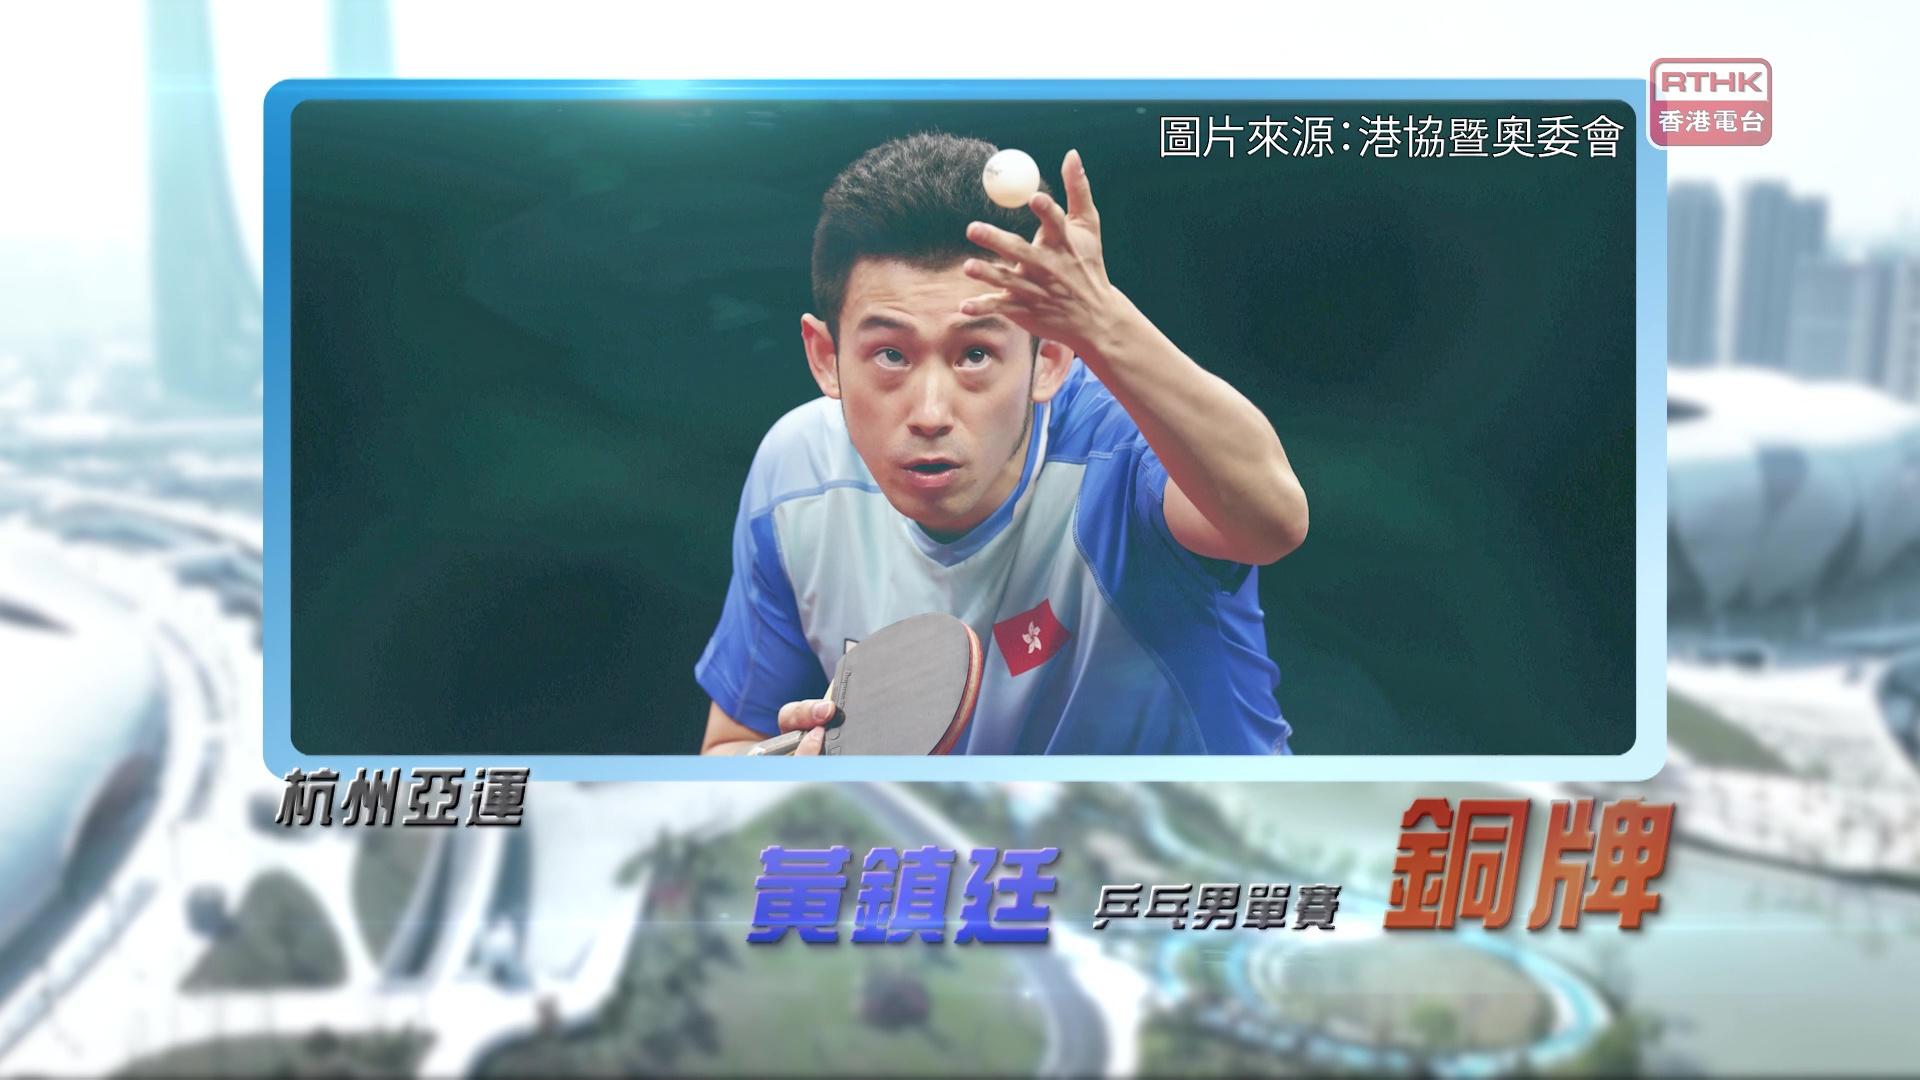 恭喜香港乒乓代表黄镇廷获得铜牌